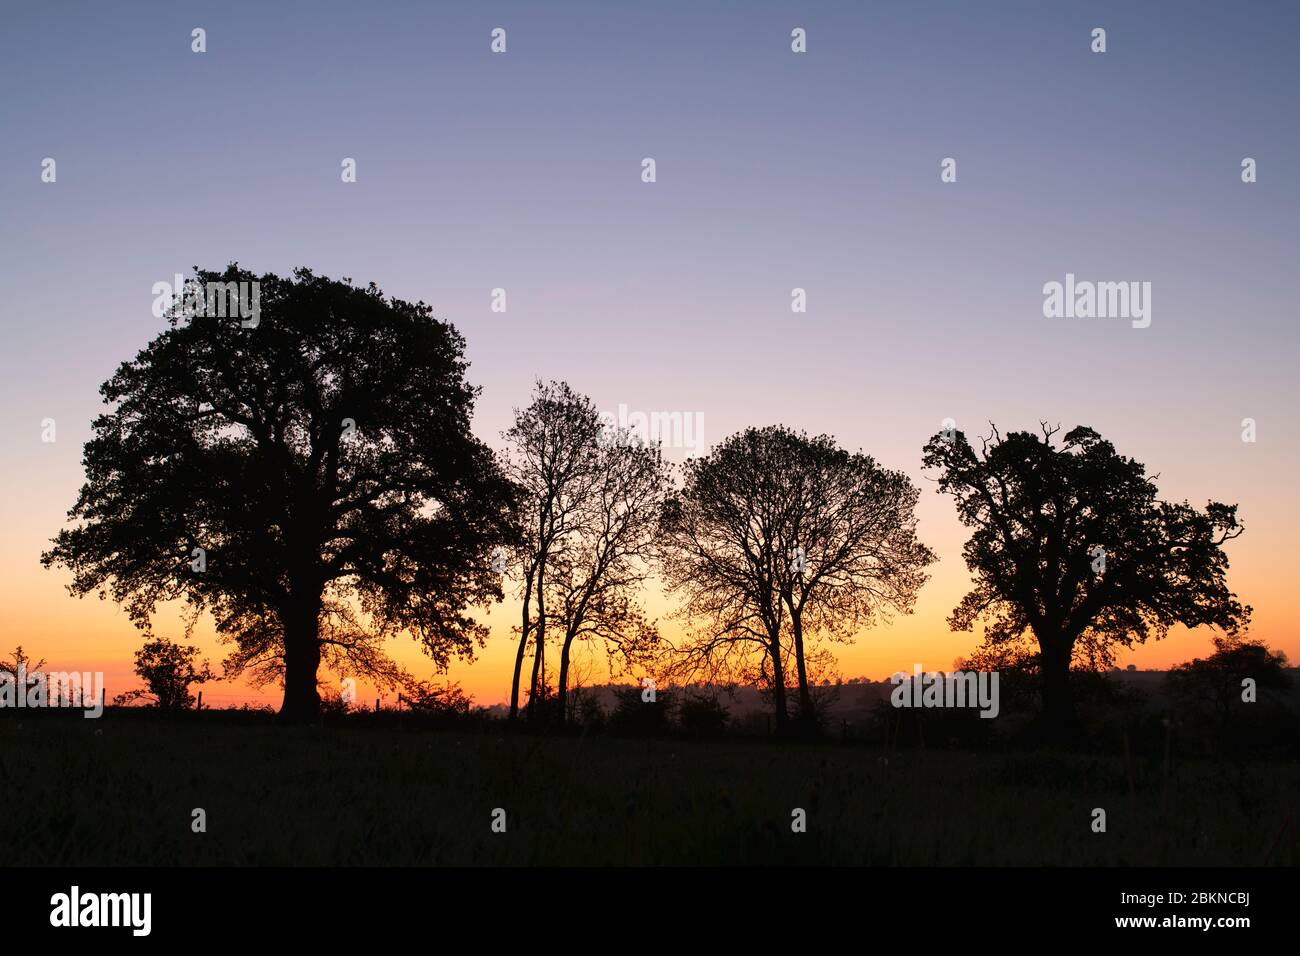 Silhouette et hedgerow à l'aube dans la campagne de l'oxfordshire. Oxfordshire Angleterre Banque D'Images